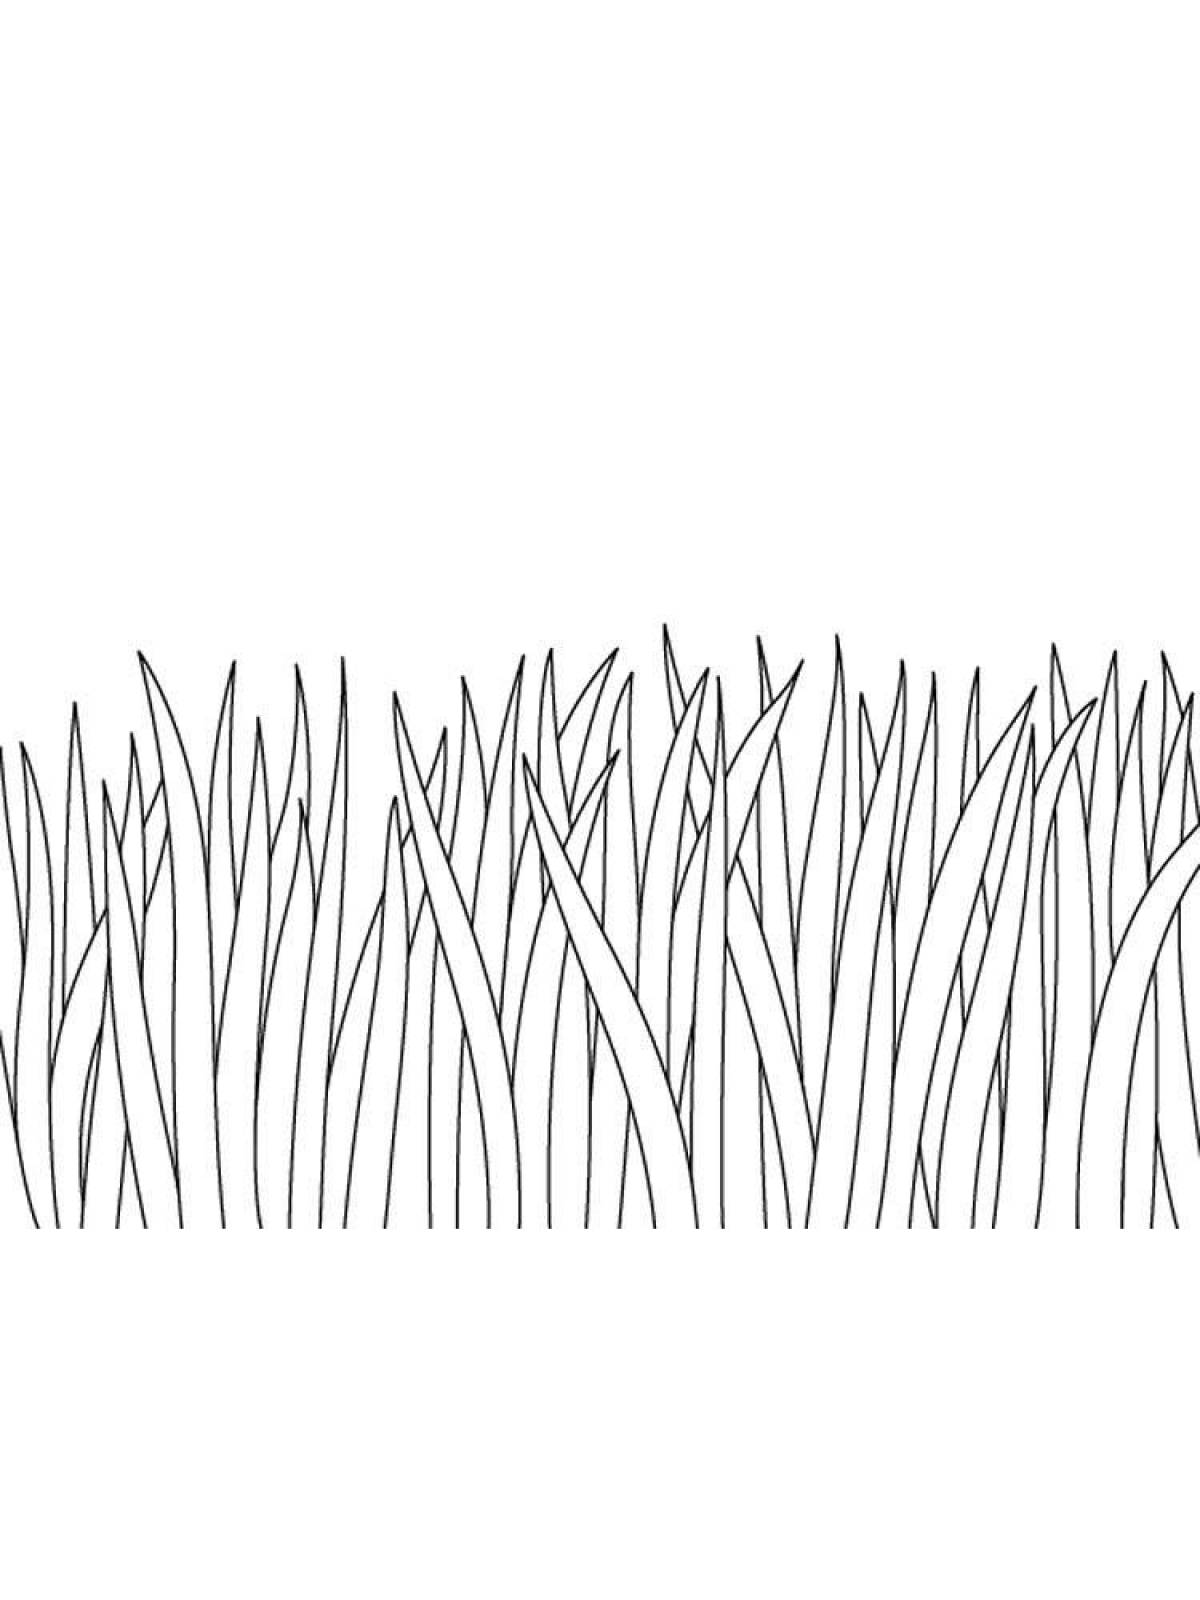 Grass #6